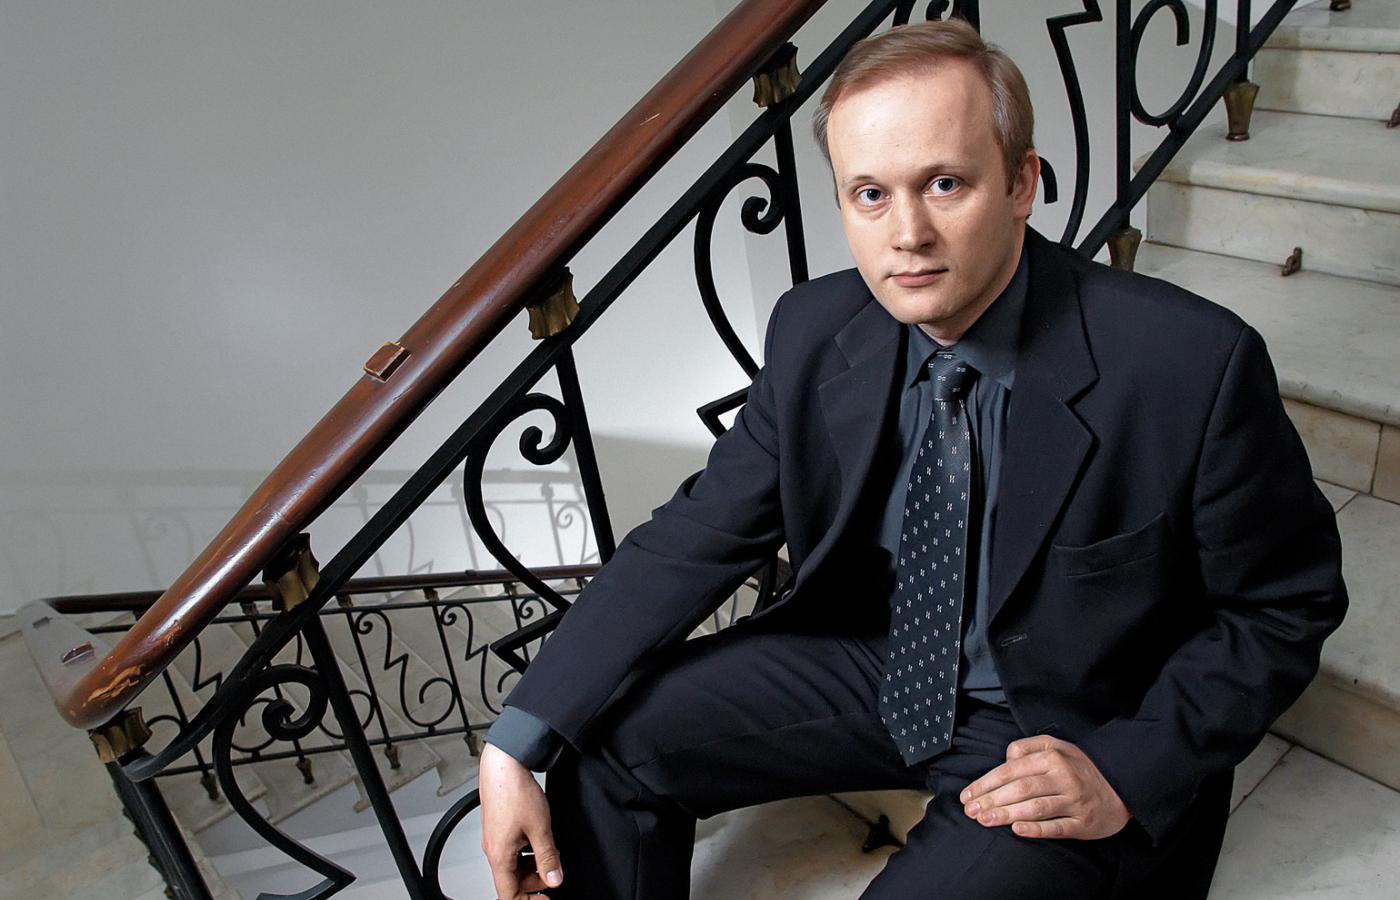 Najmłodszym z kandydatów jest Łukasz Kamiński, 38-letni dyrektor Biura Edukacji Publicznej.